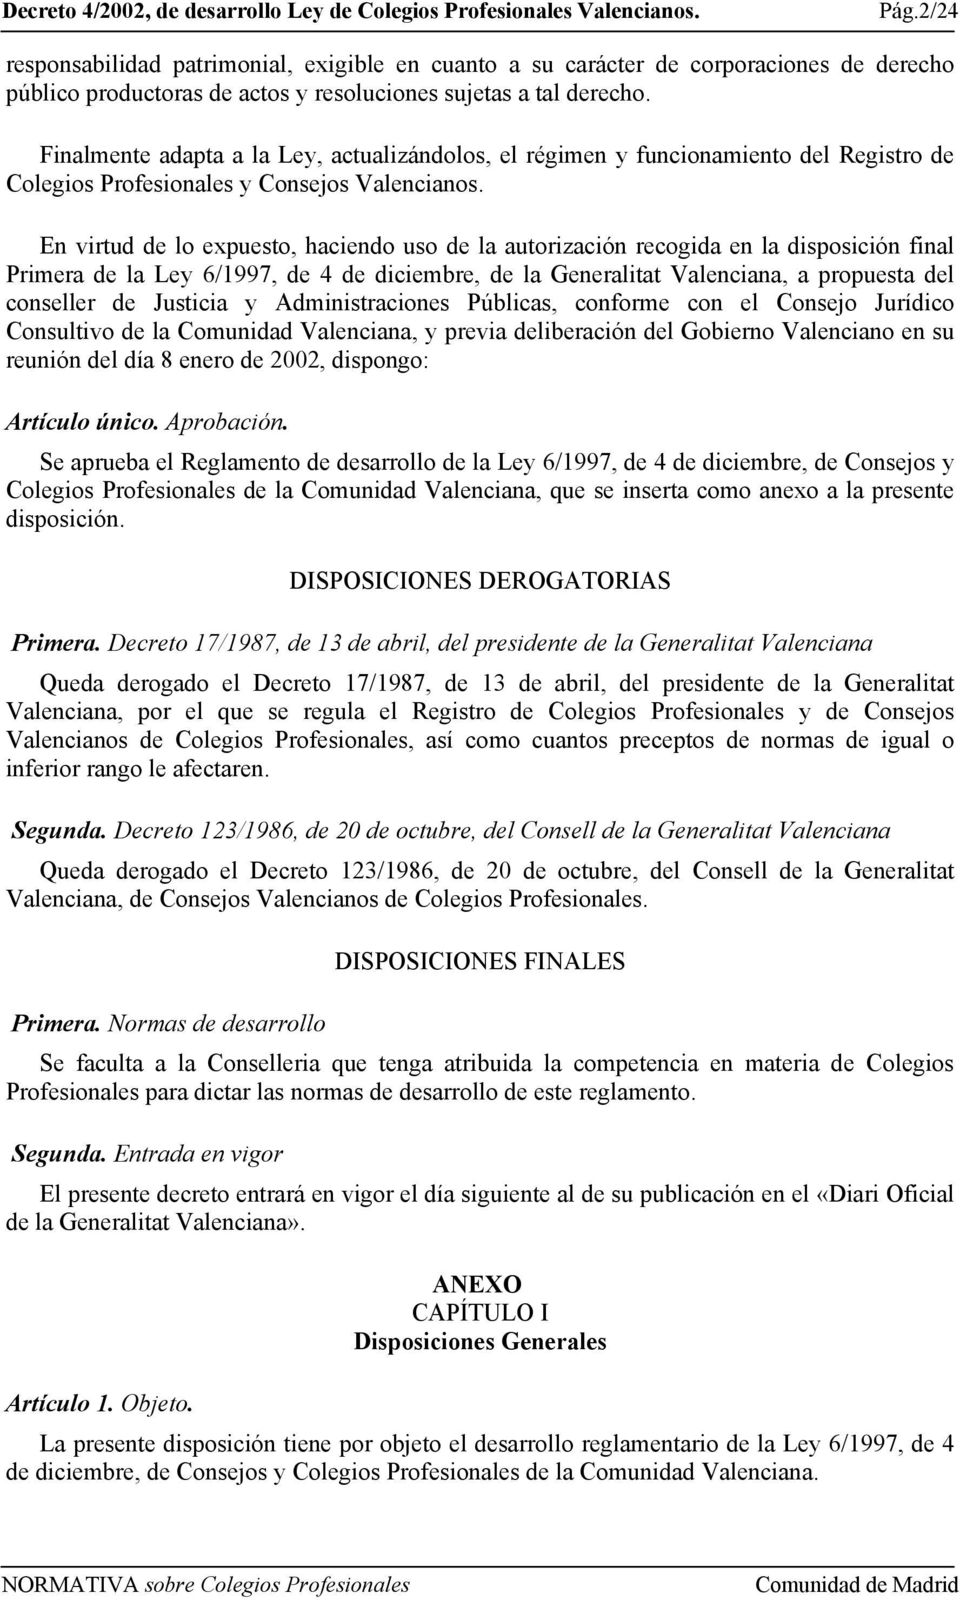 En virtud de lo expuesto, haciendo uso de la autorización recogida en la disposición final Primera de la Ley 6/1997, de 4 de diciembre, de la Generalitat Valenciana, a propuesta del conseller de